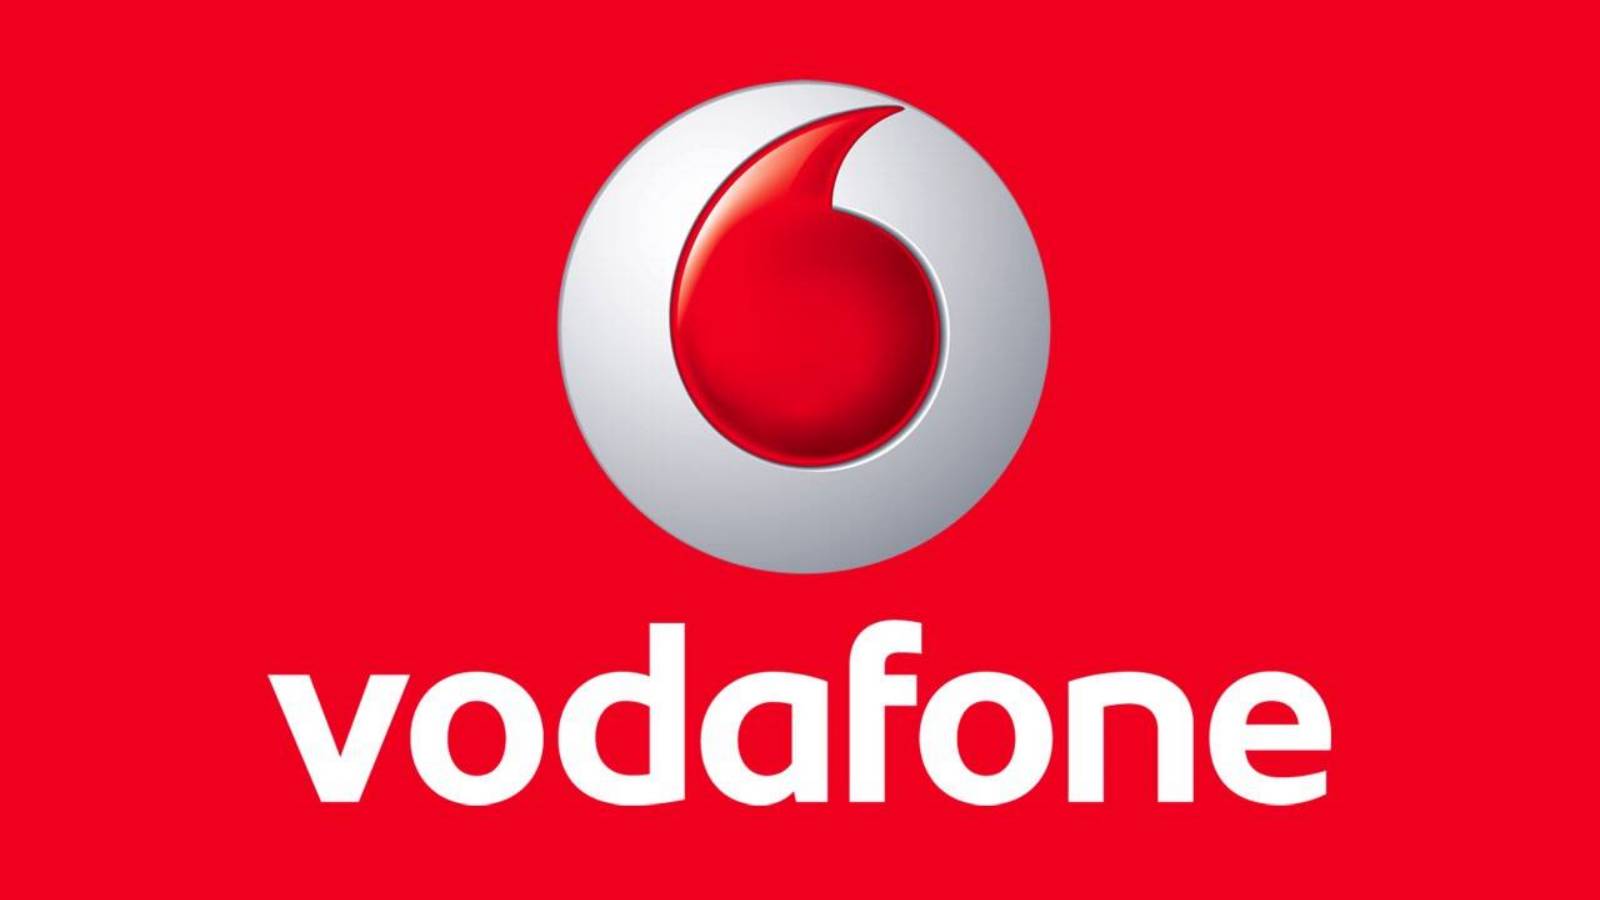 Oficjalne ogłoszenie Vodafone, które zapewnia klientom BEZPŁATNE 6-miesięczne dni